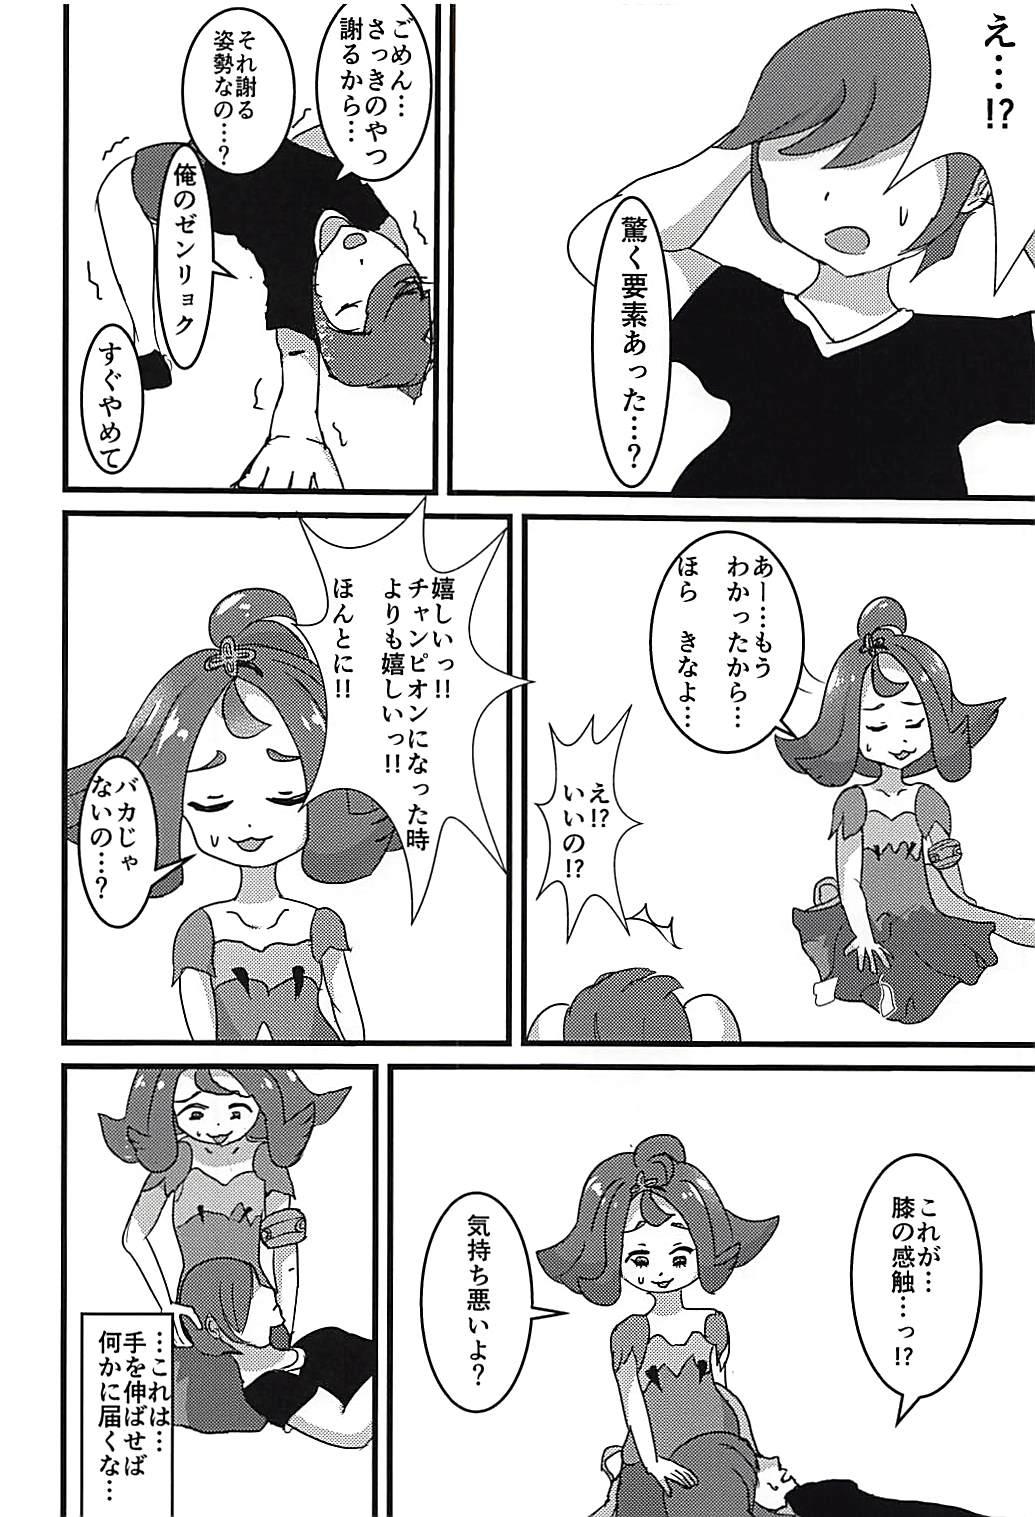 Spanking Kanousei ga Aru to Iu nara Boku wa Nando demo Taiyou ni datte Te o Nobasu - Pokemon Gay Reality - Page 4